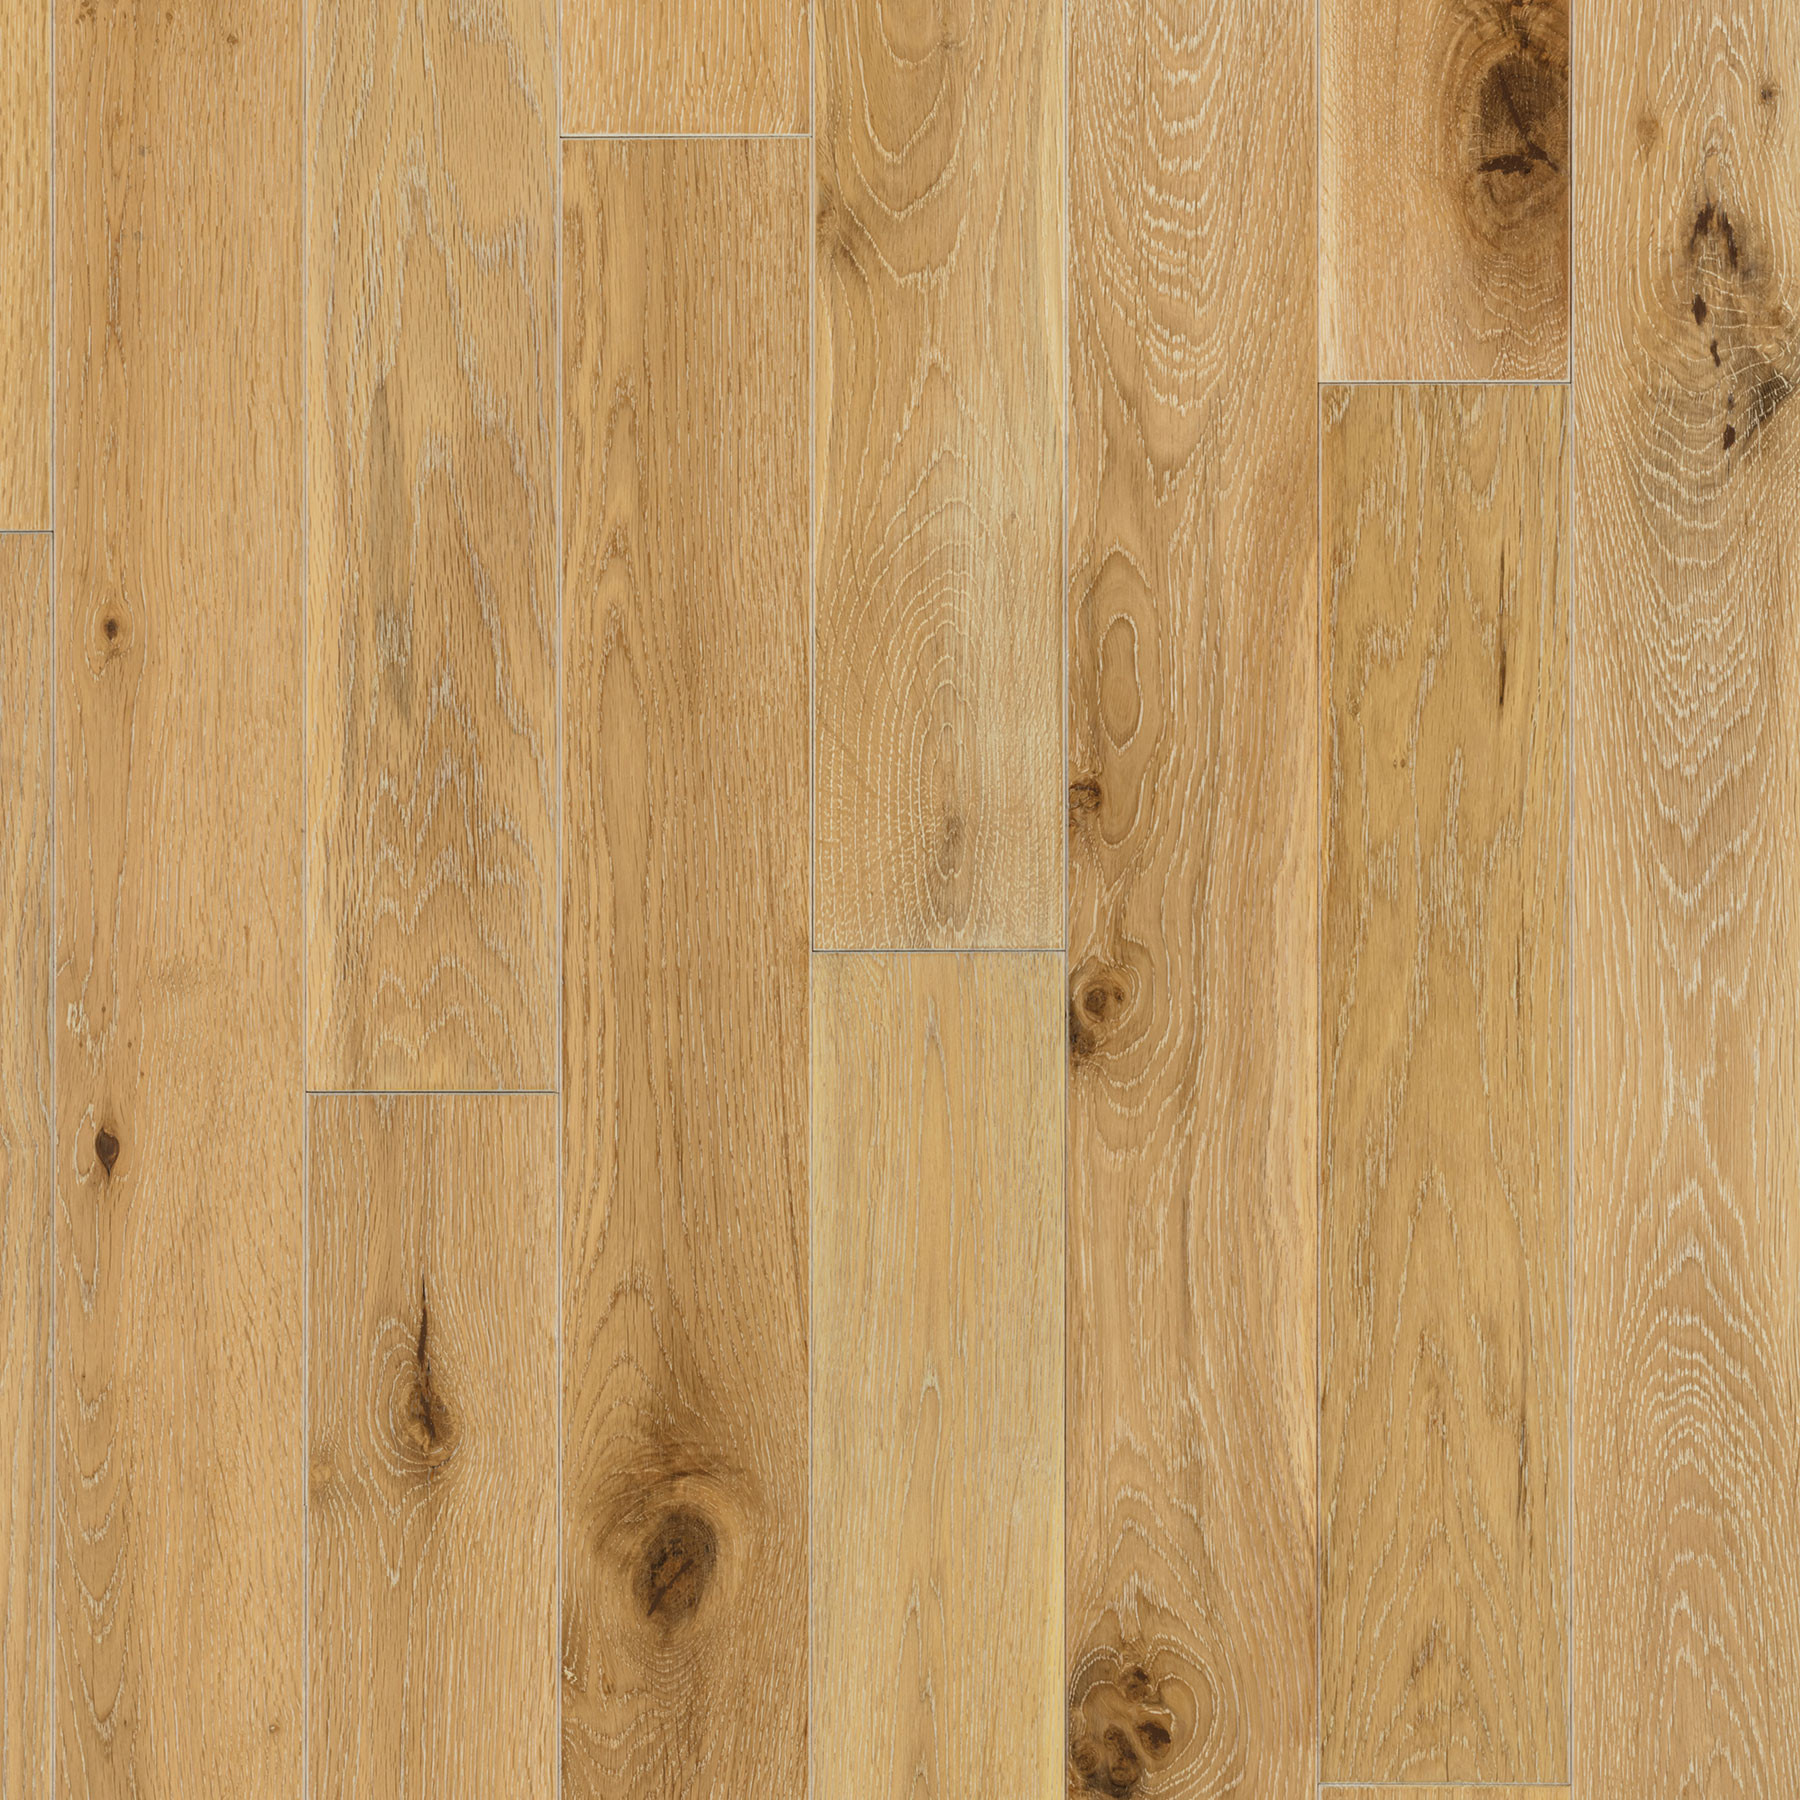 2 1 4 prefinished hardwood flooring of harbor oak 3 1 2″ white oak white washed etx surfaces regarding harbor oak 3 1 2″ white oak white washed